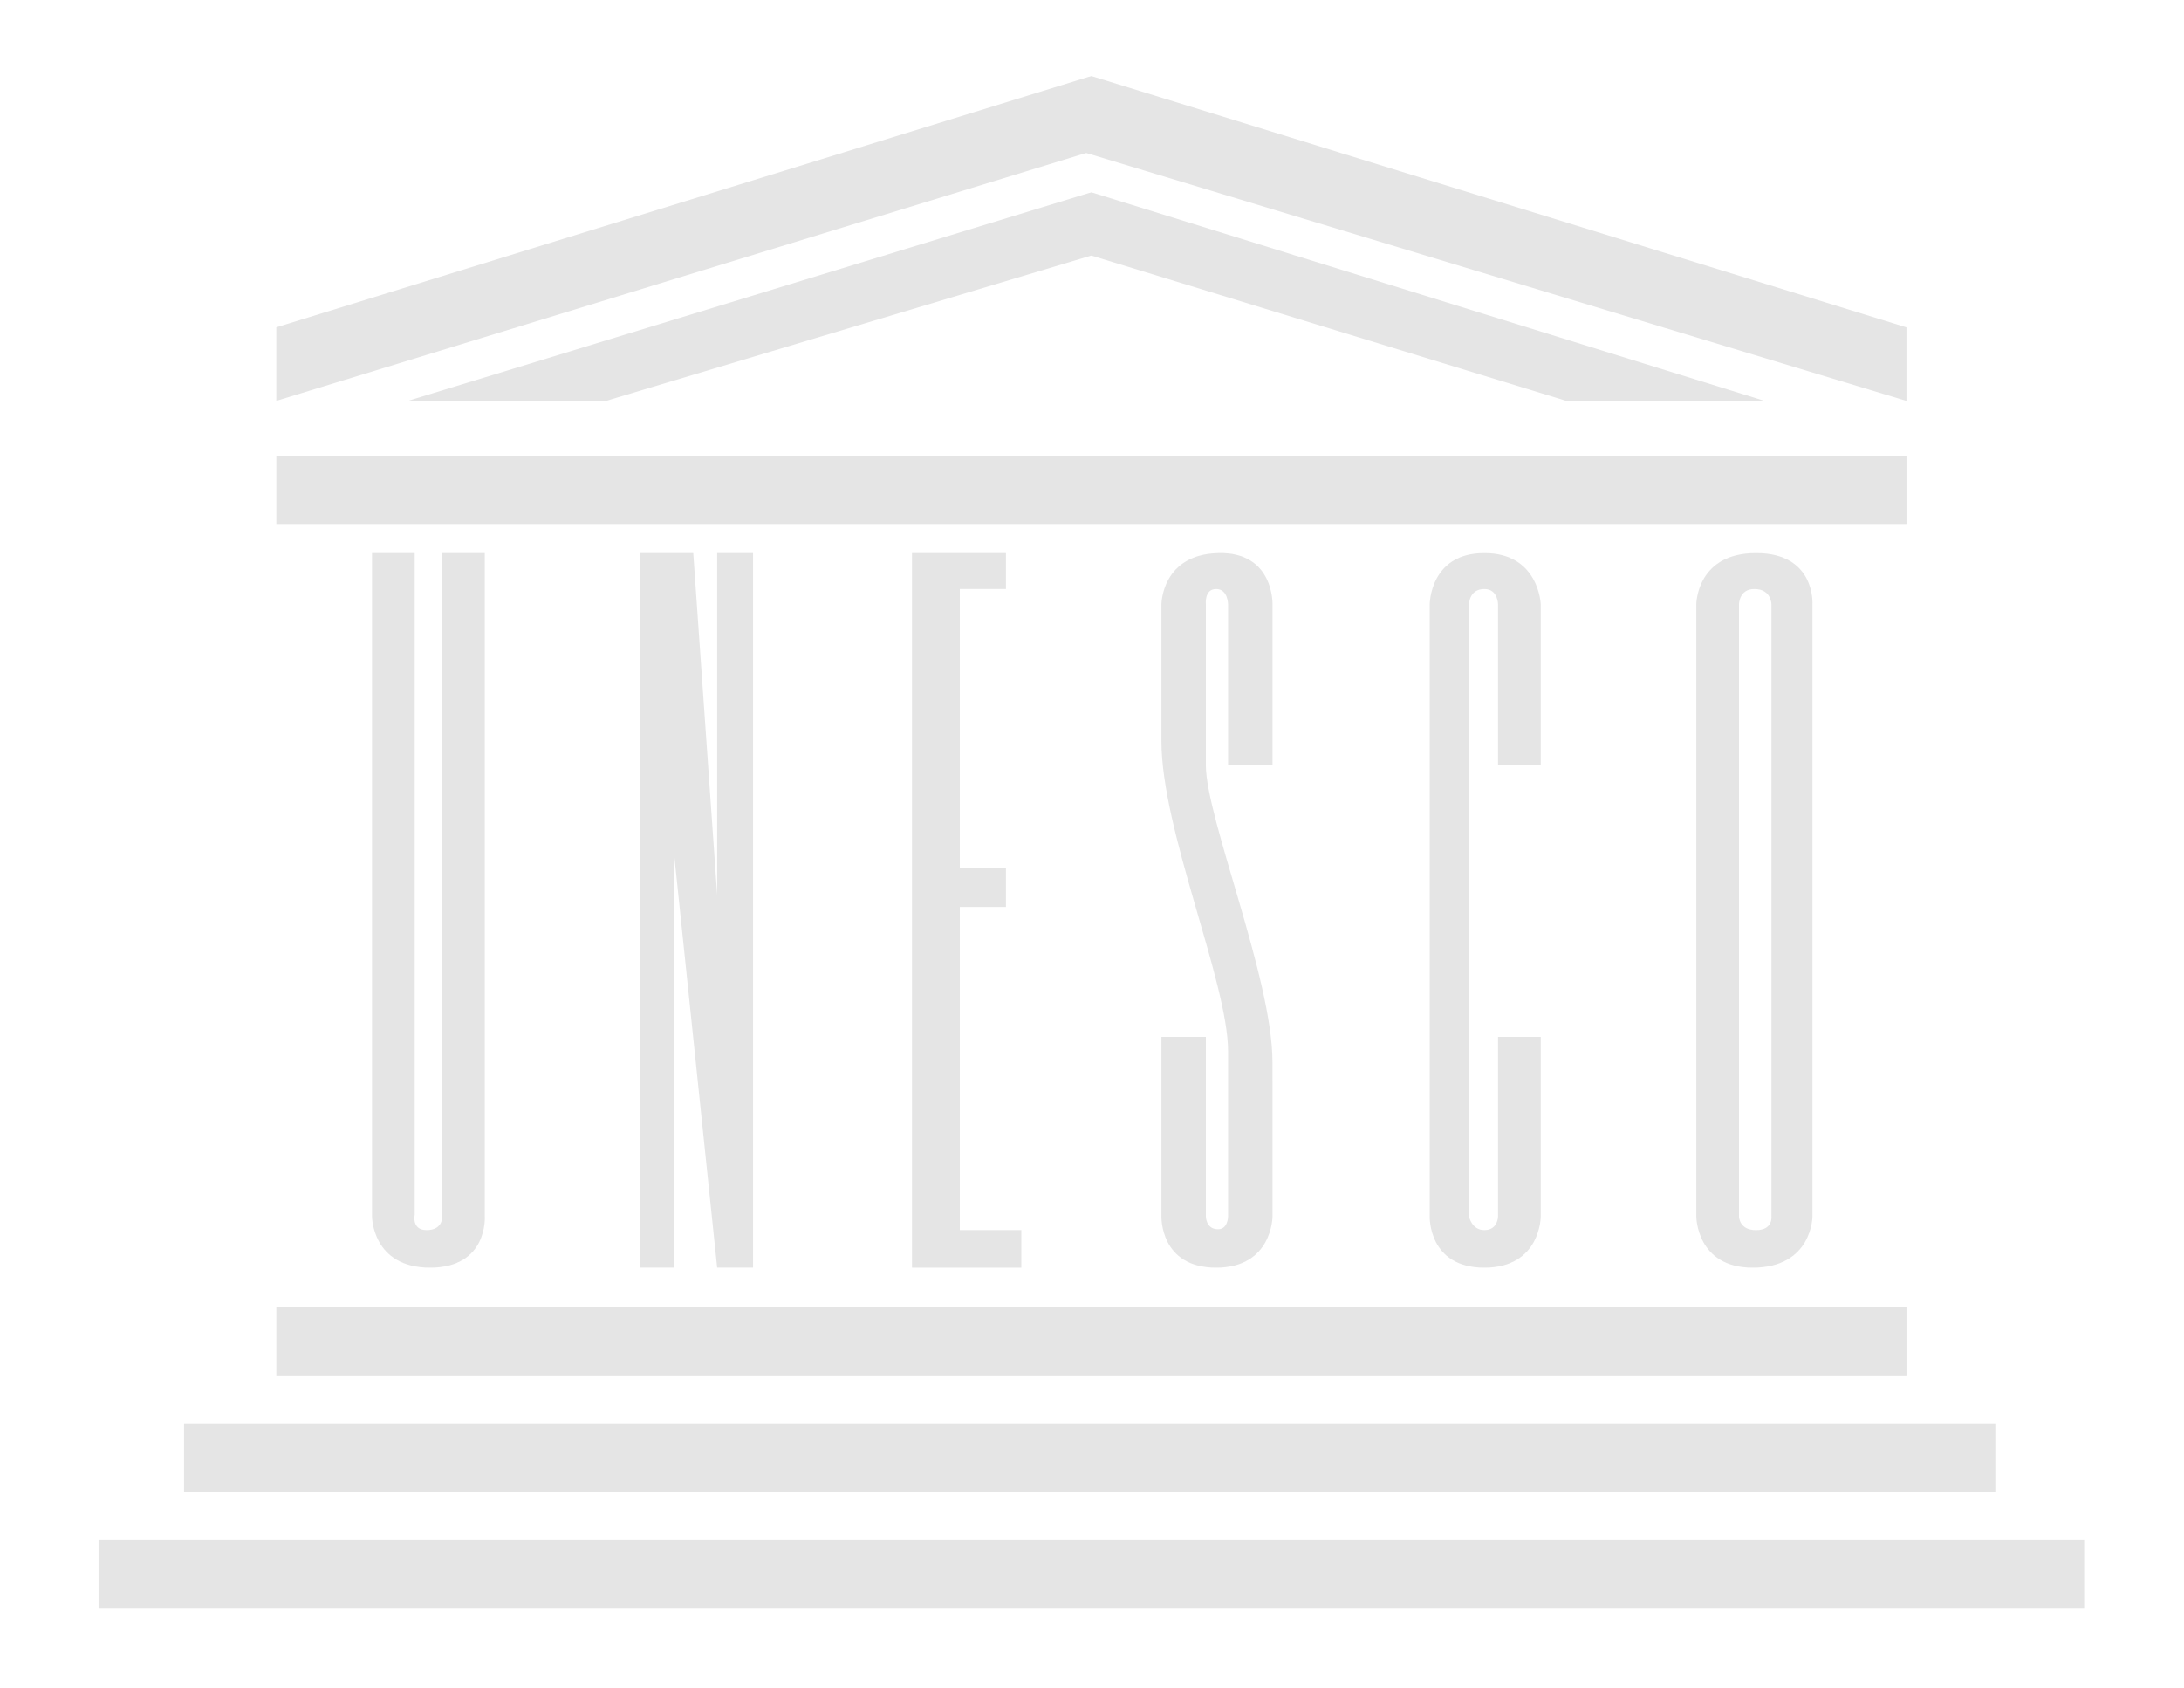 Unesco org. ЮНЕСКО эмблема. Символ ЮНЕСКО. Герб ЮНЕСКО. ЮНЕСКО на прозрачном фоне.